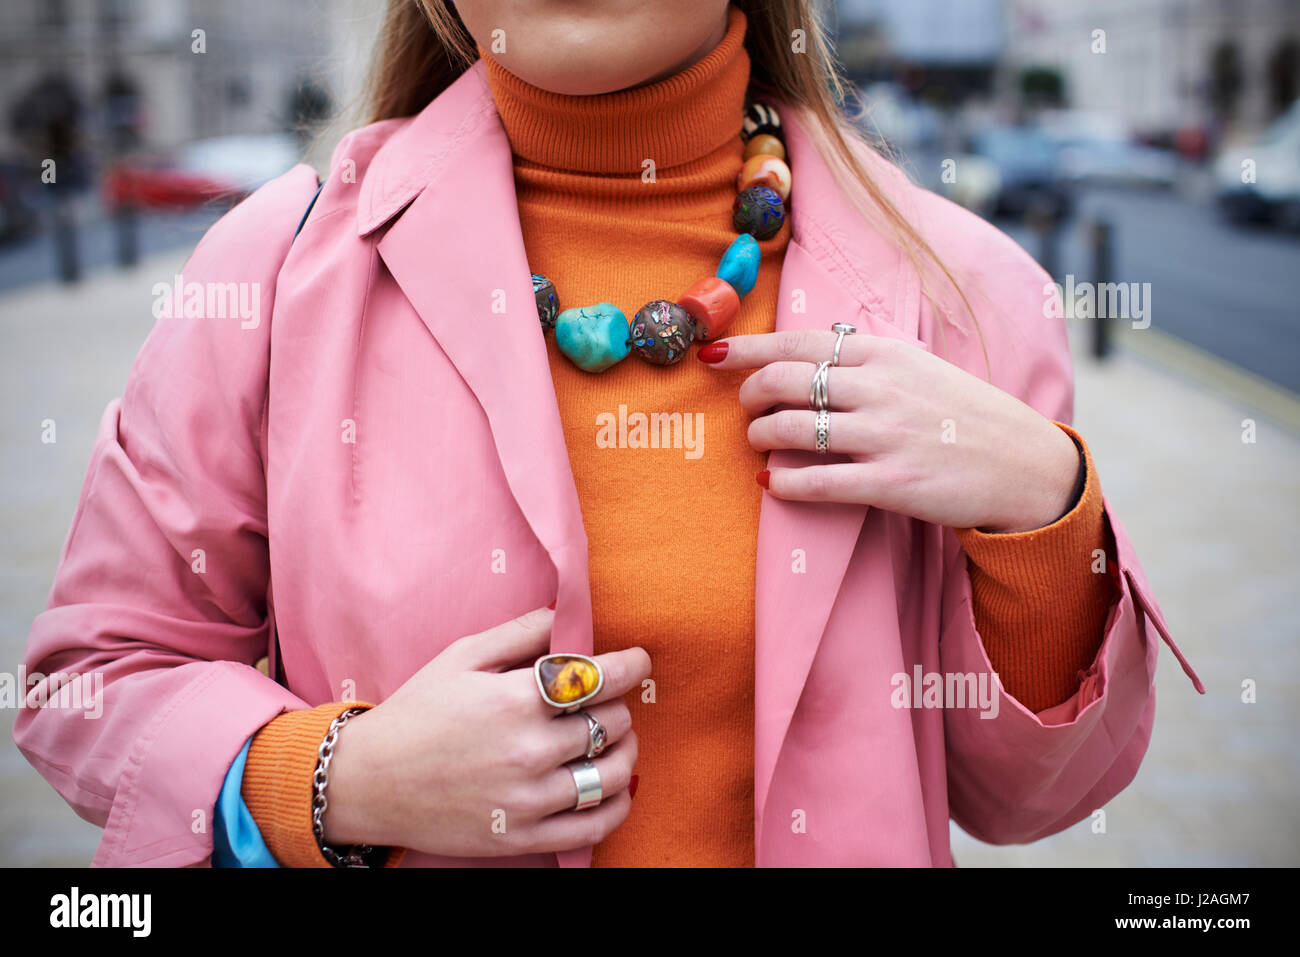 Londres - Février 2017 : woman manteau rose et orange collier en pierre chunky pullover avec joints toriques et debout dans une rue pendant la Semaine de la mode de Londres, horizontal Banque D'Images